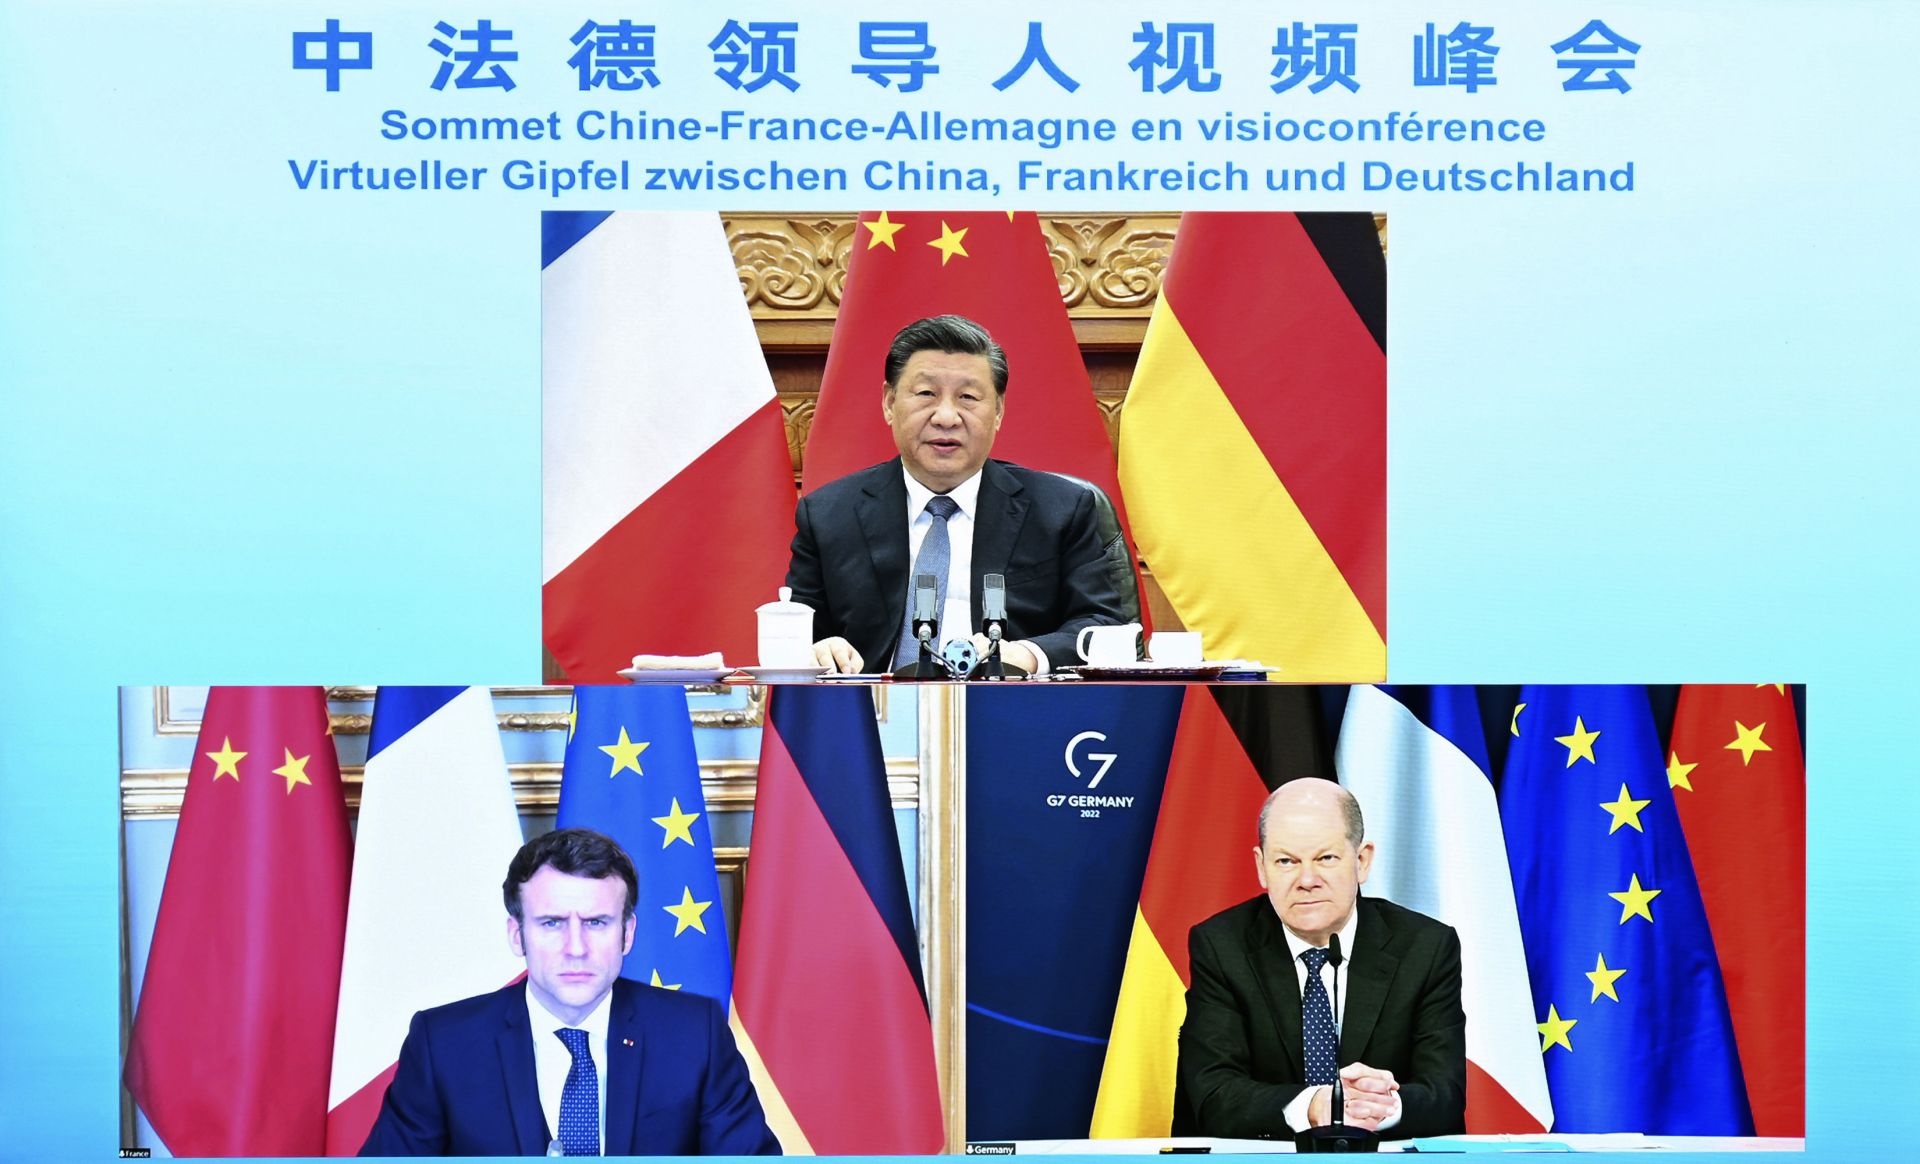 В началото на март 2022 г. европейските лидери Еманюел Макрон - президент на Франция, и Олаф Шолц - канцлер на Германия, разговаряха с председателя на Китайската народна република Си Дзинпин